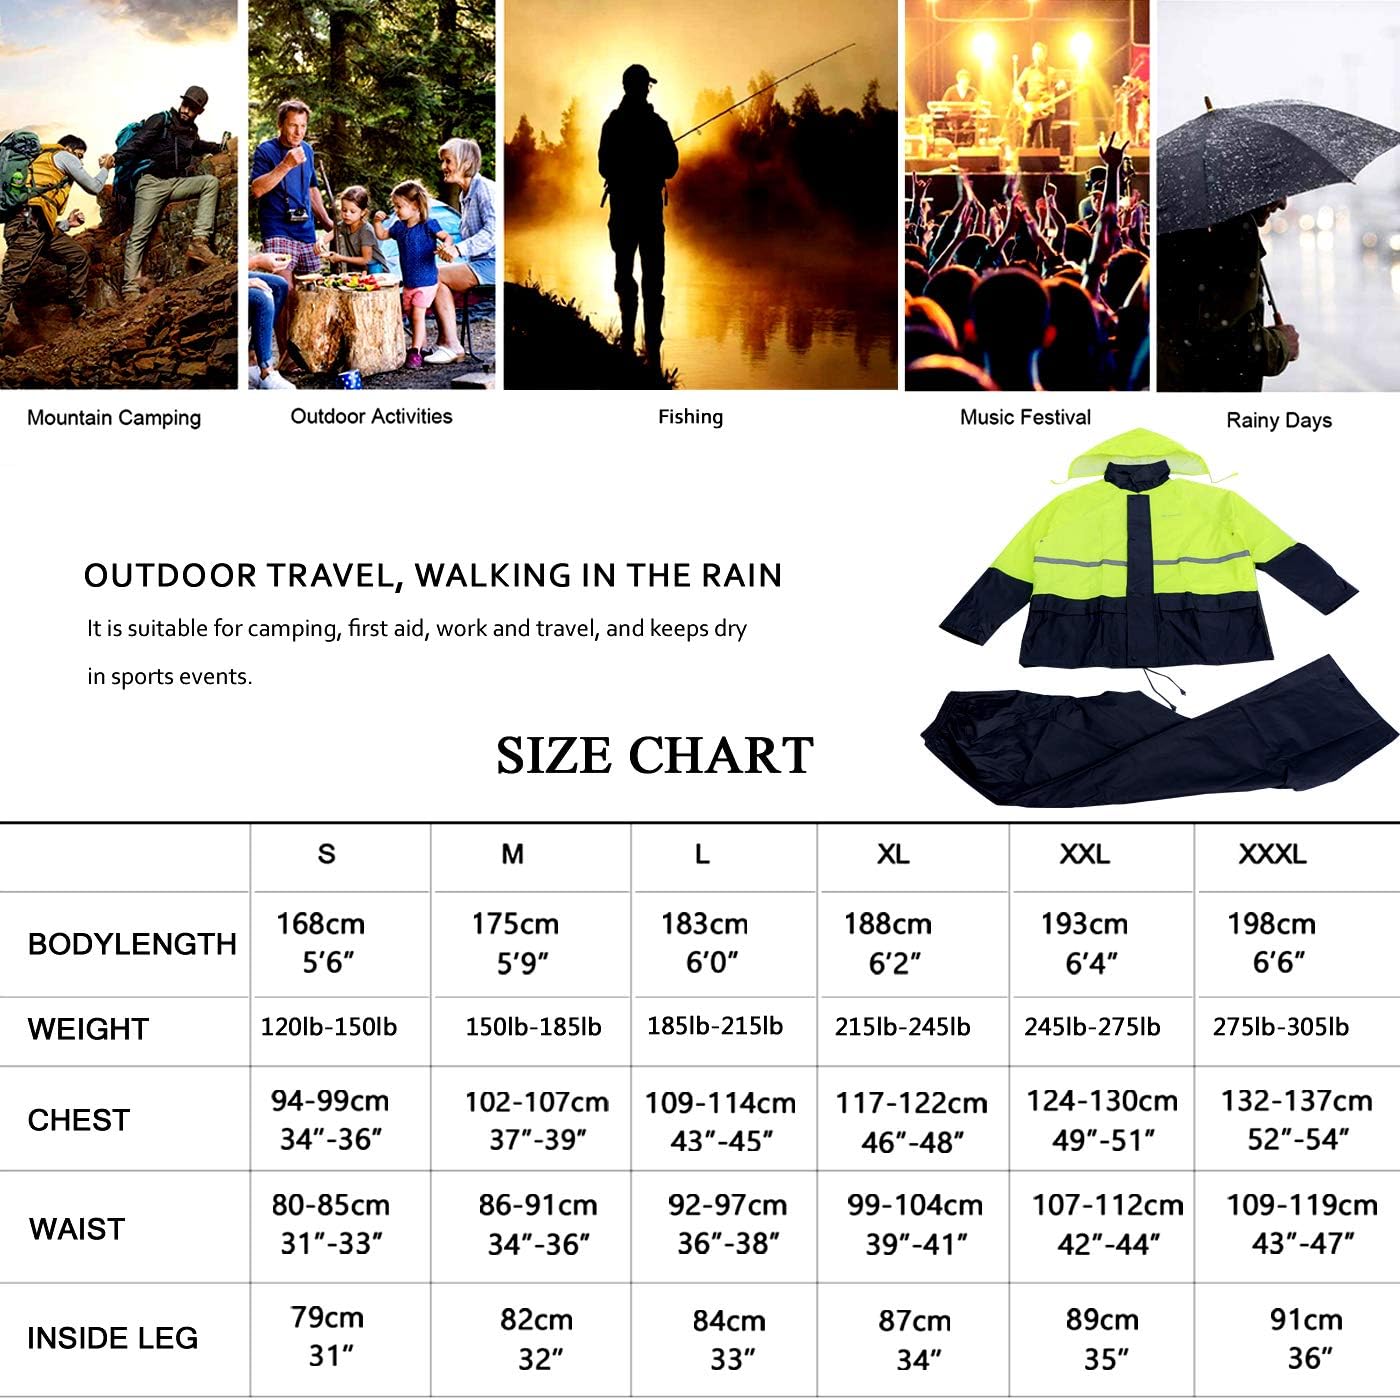 Generic Rain Suit, Rain Gear for Men Women Waterproof Work Lightweight Rainwear Rain Coat (Jacket